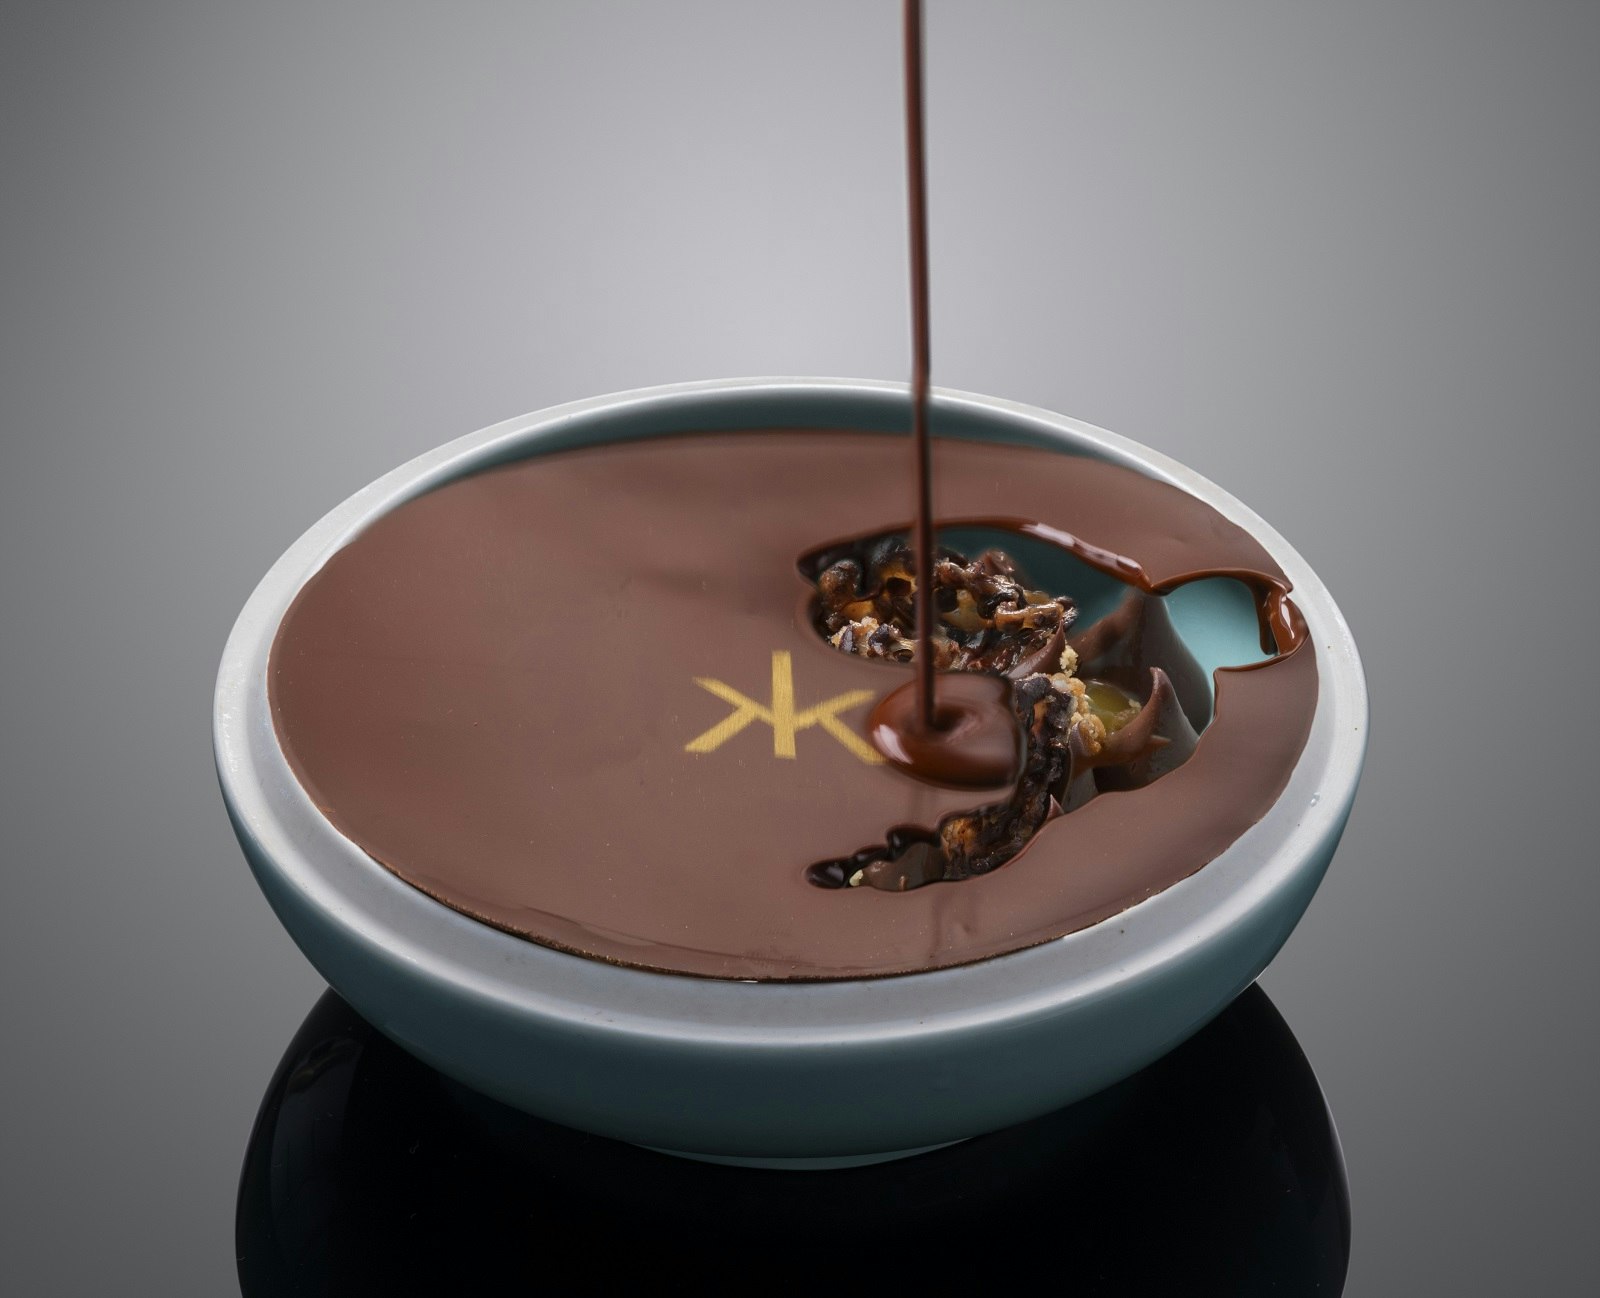 En överseende slovensk chokladkruka, med Hakkasan-logotypen i guld.  Den hårda chokladytan dränks med en varm chokladsås för att smälta toppen och avslöja insidan. 